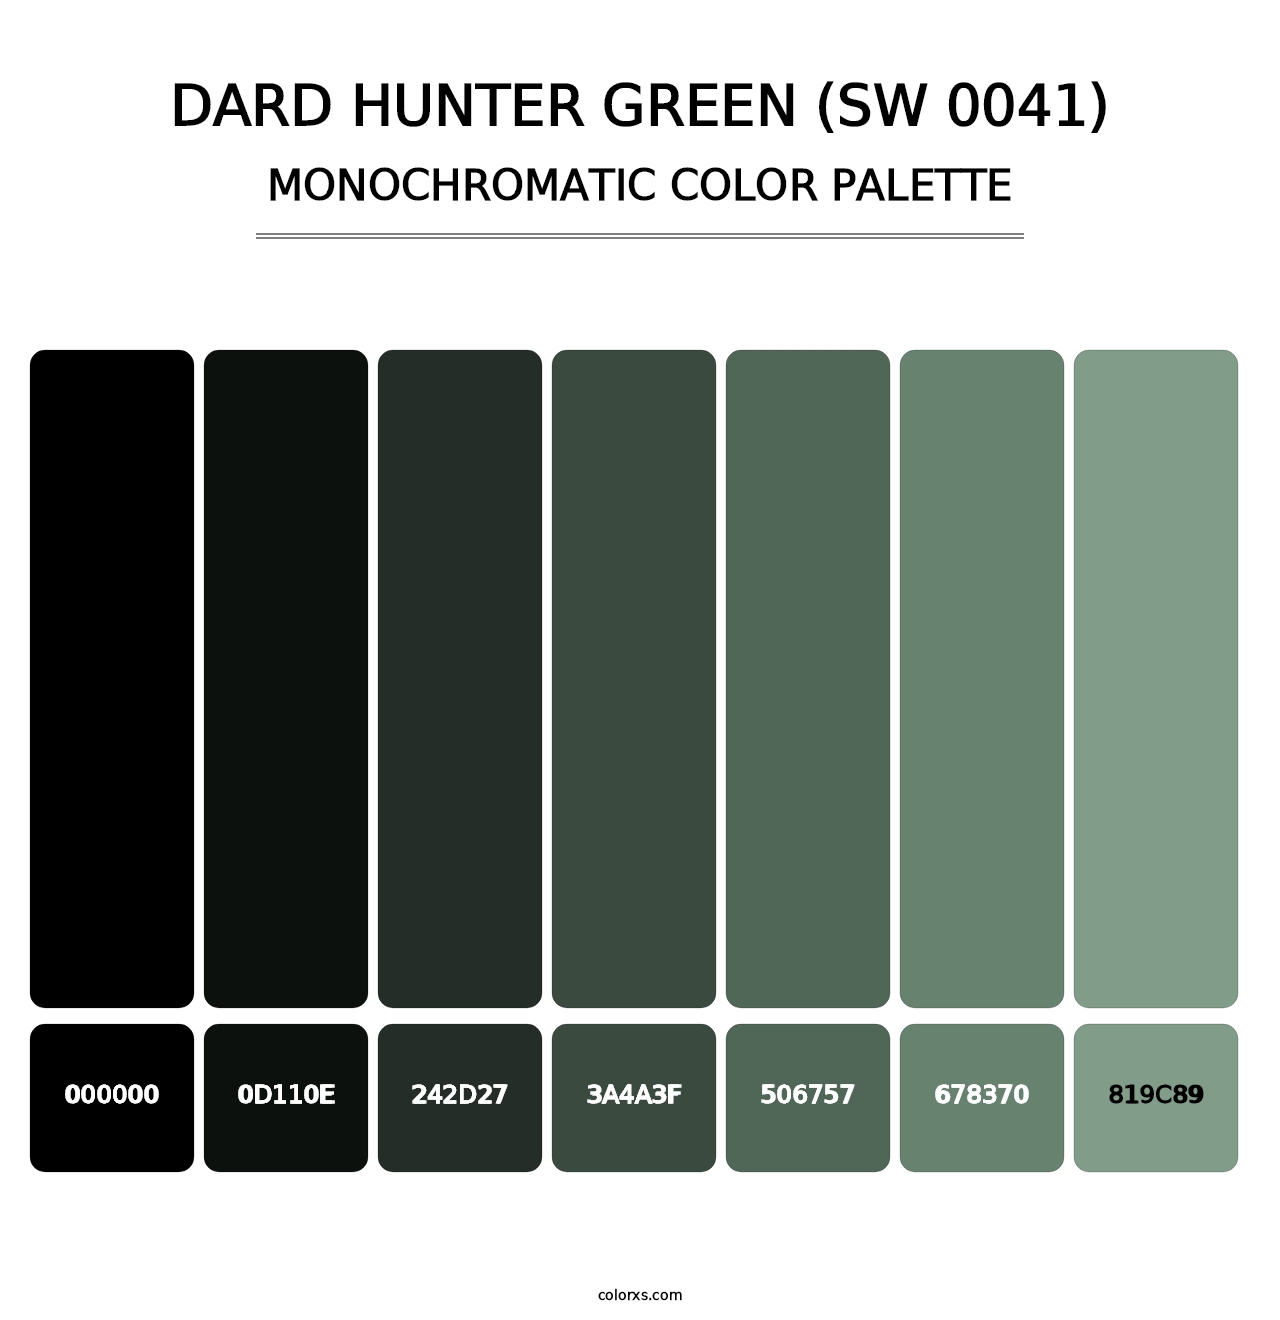 Dard Hunter Green (SW 0041) - Monochromatic Color Palette